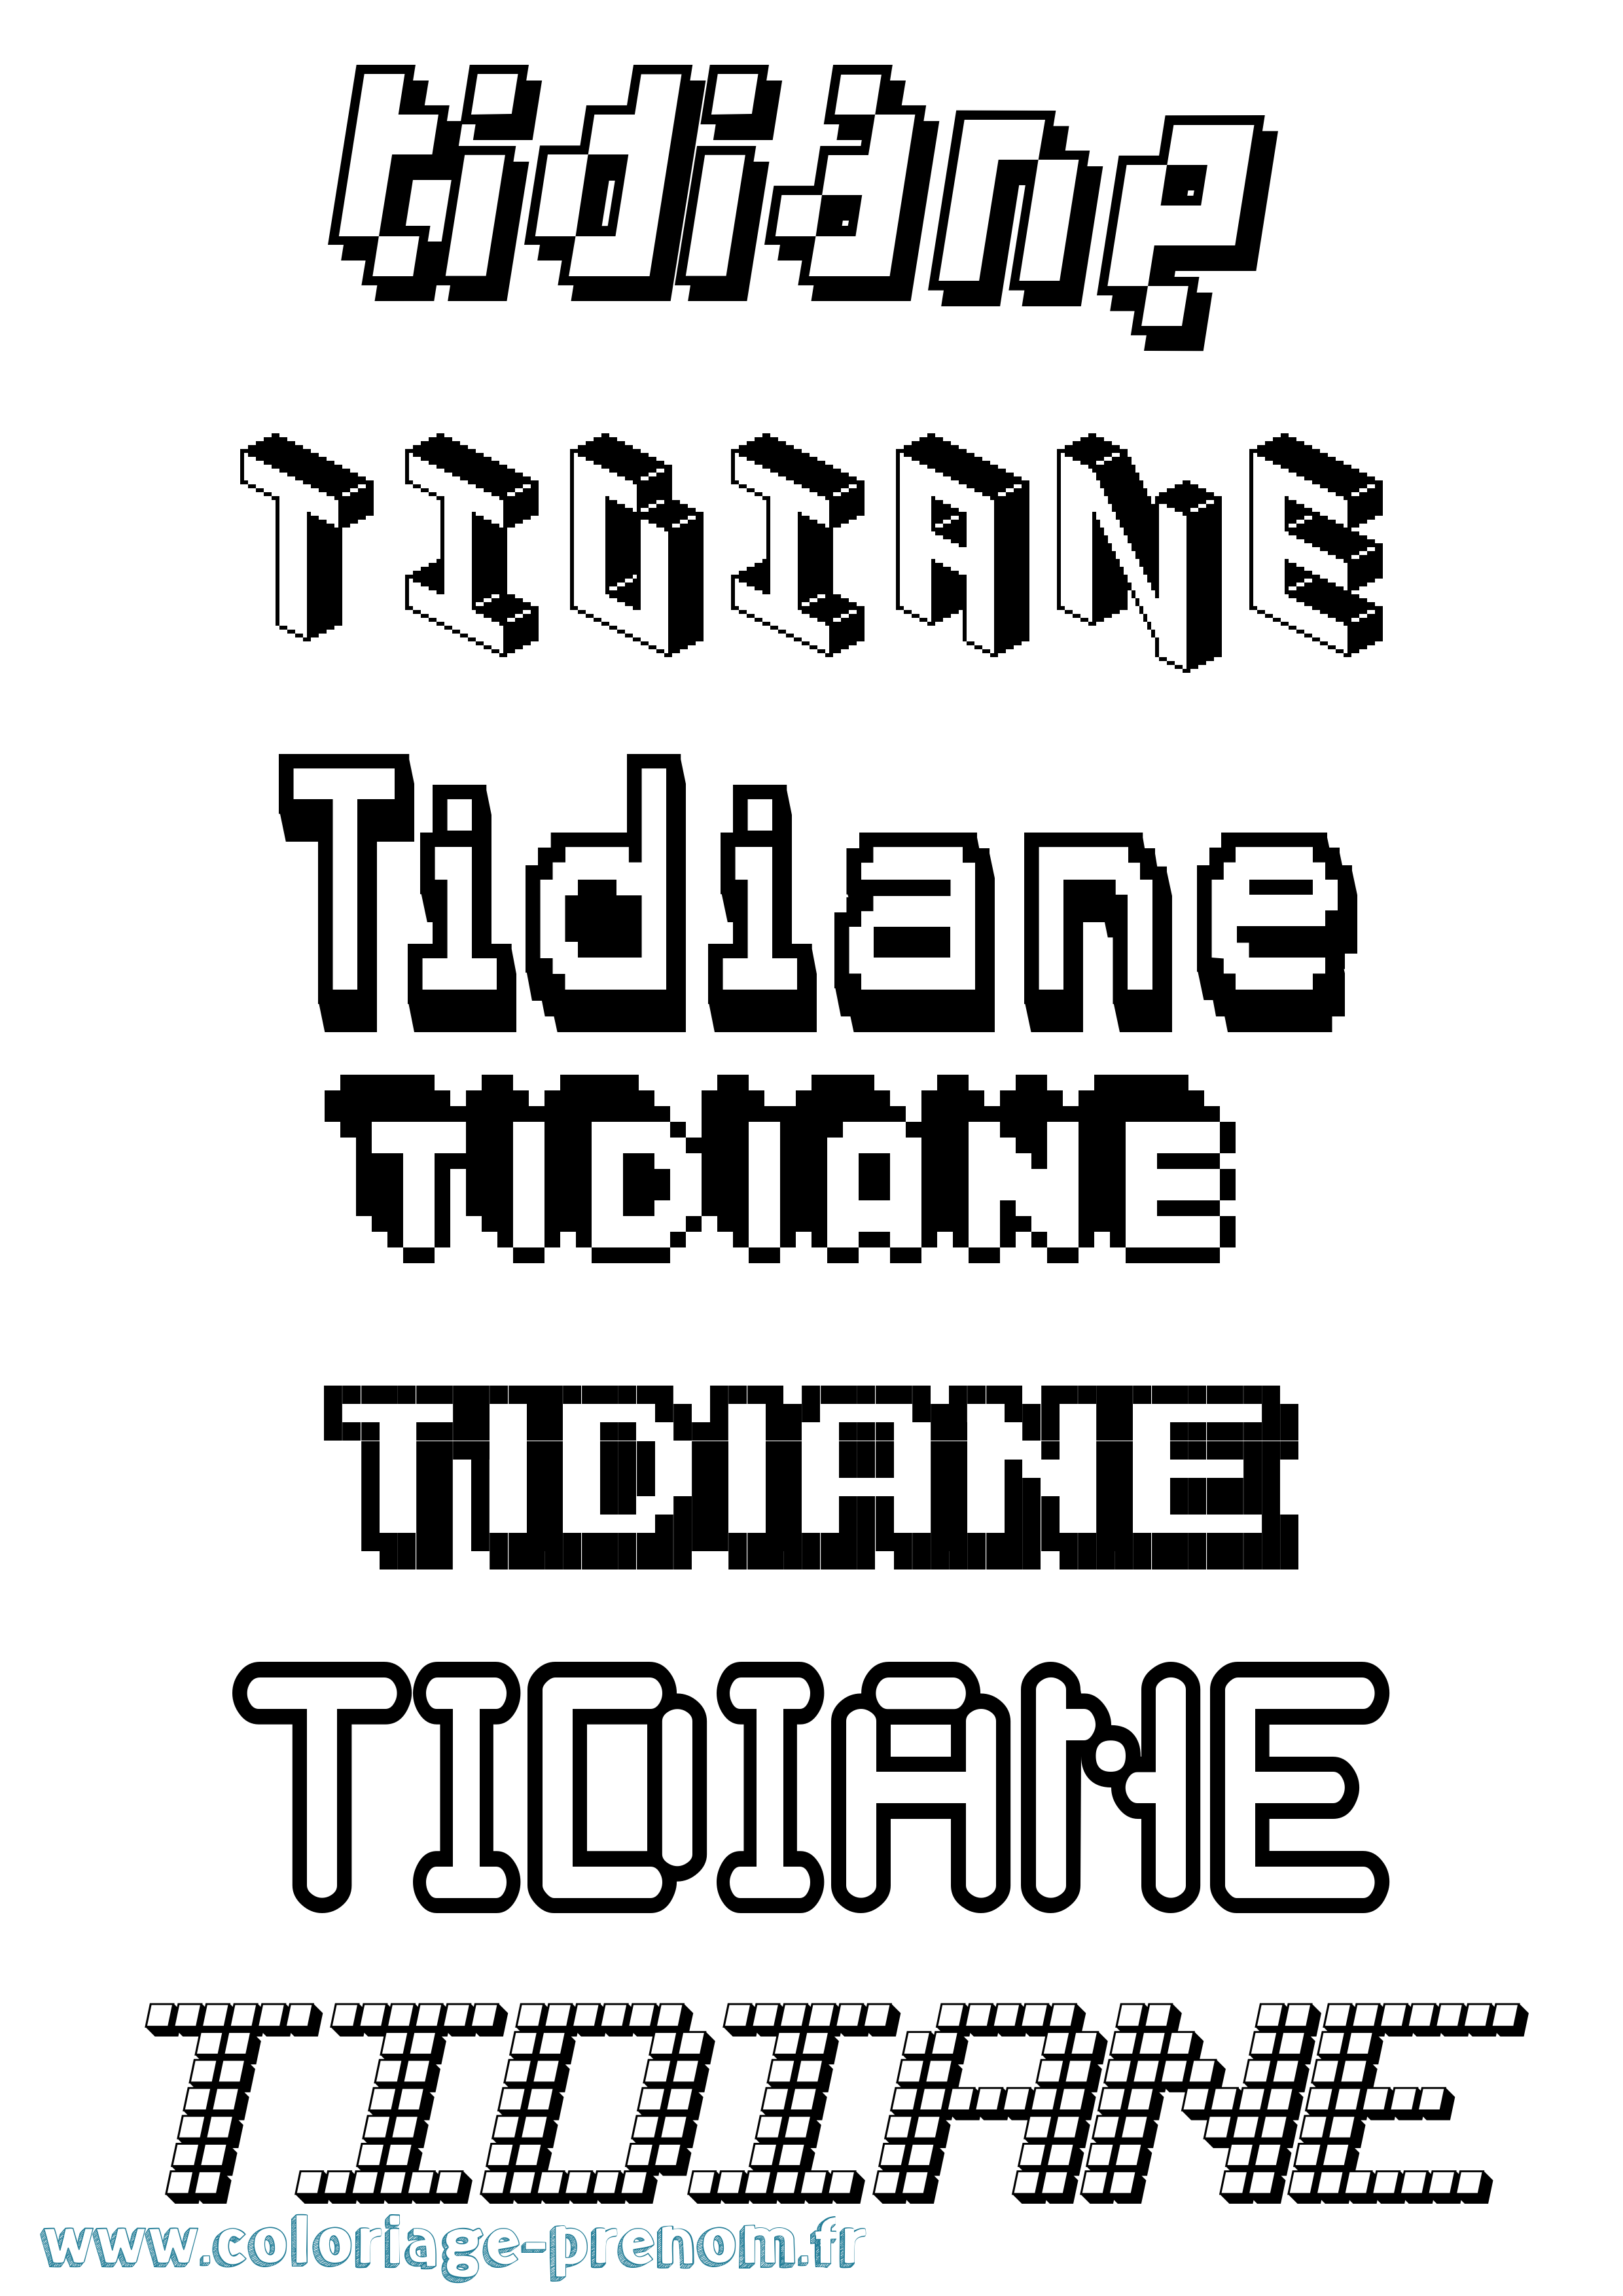 Coloriage prénom Tidiane